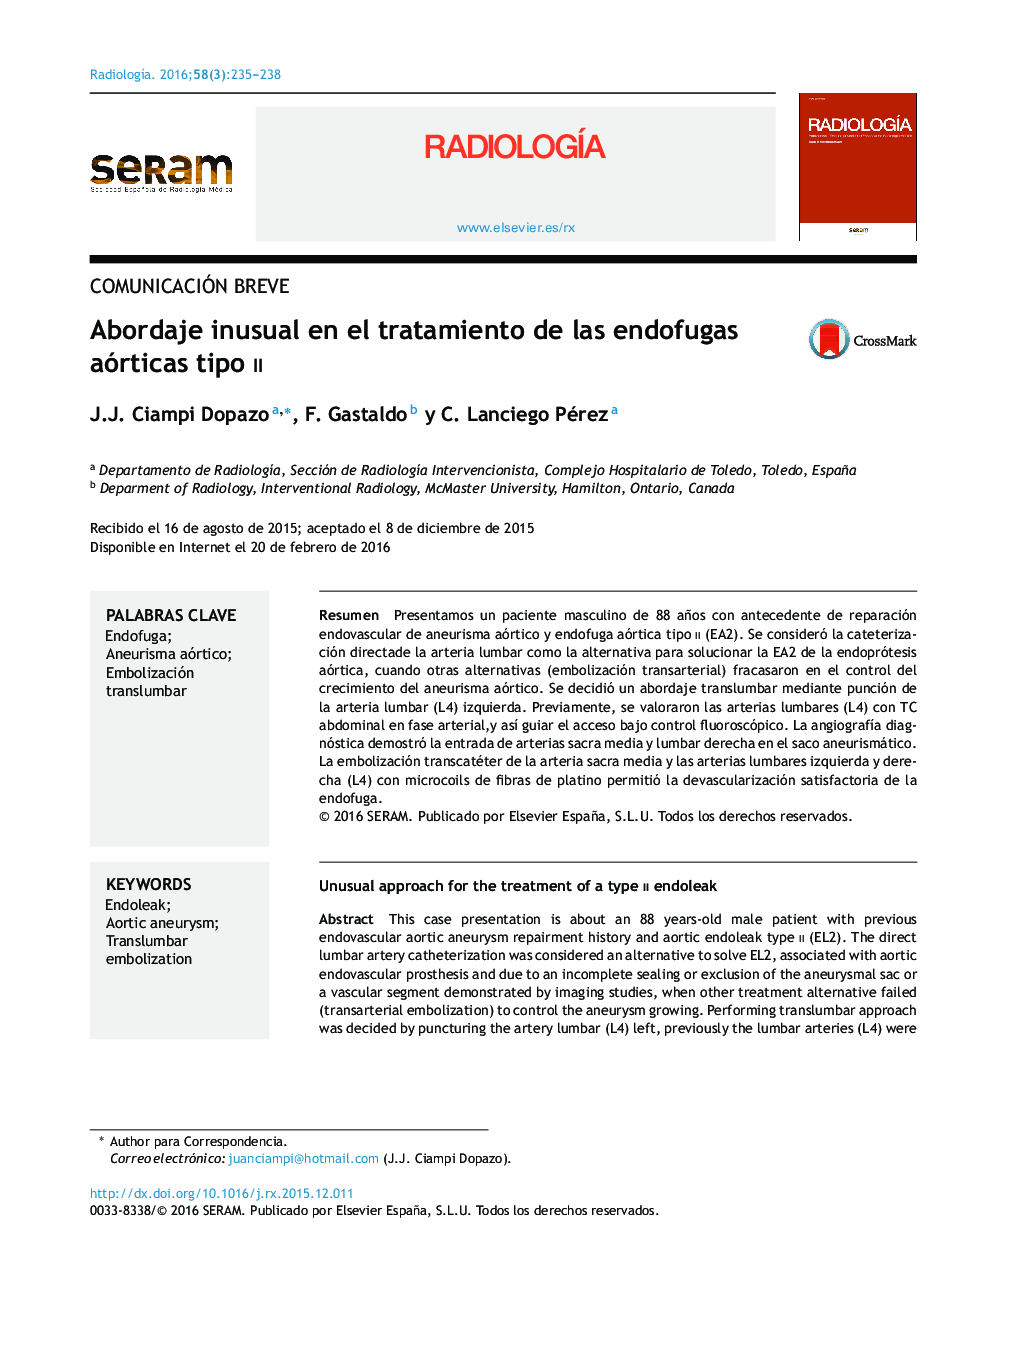 Abordaje inusual en el tratamiento de las endofugas aórticas tipo II